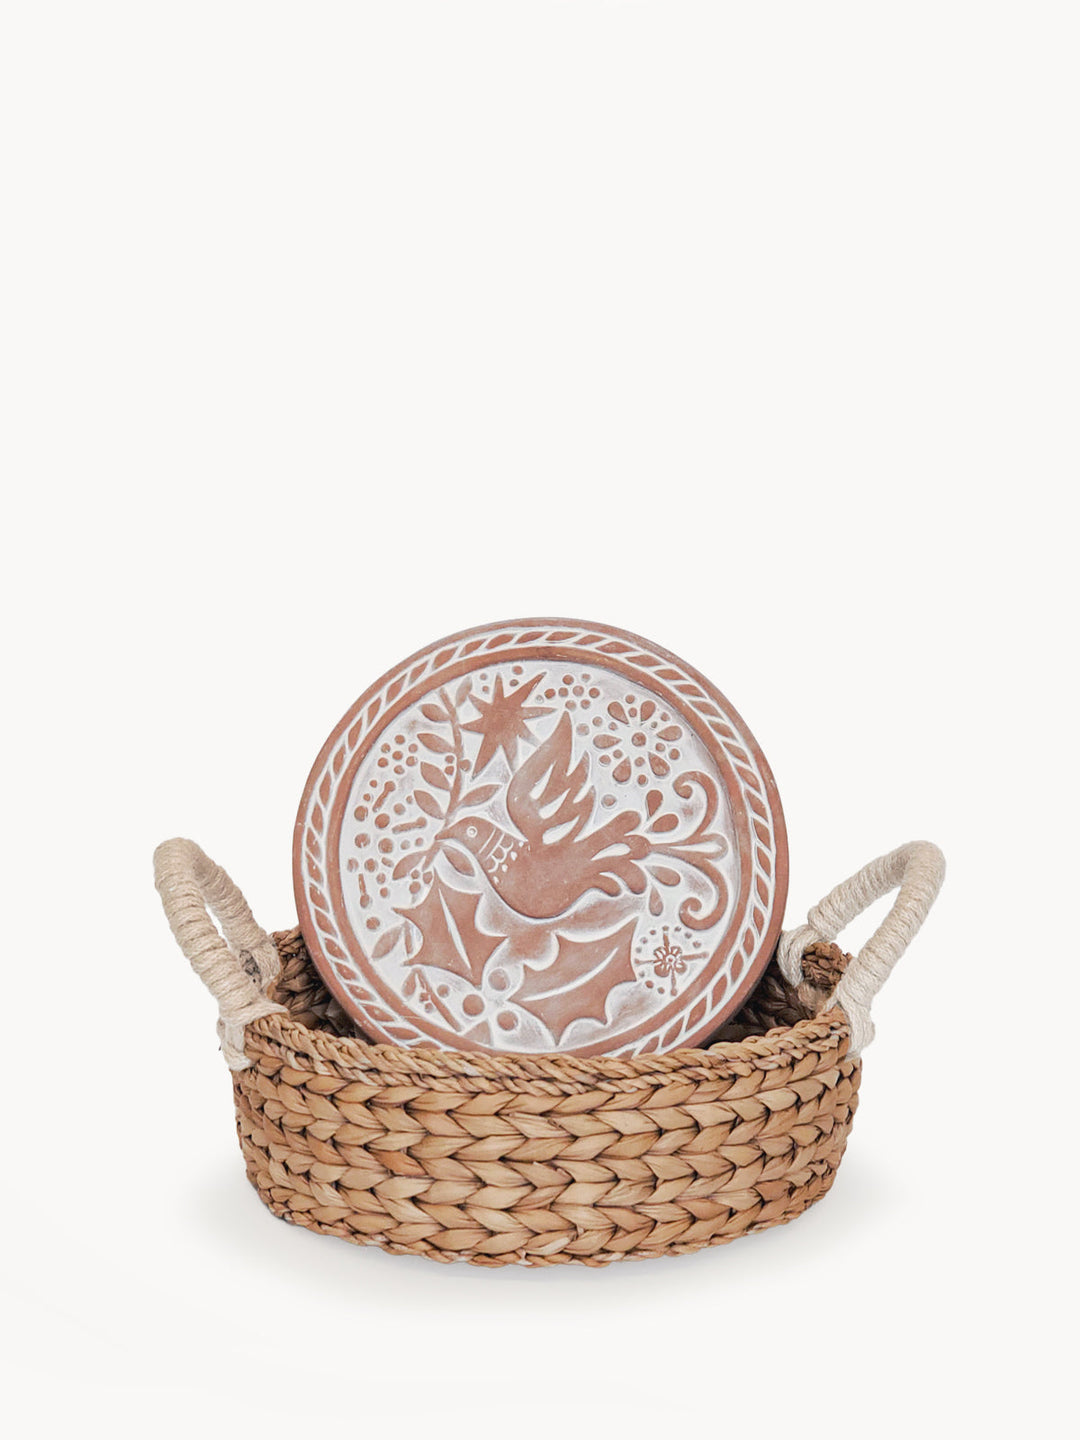 Bread Warmer & Basket - Bird Round by KORISSA